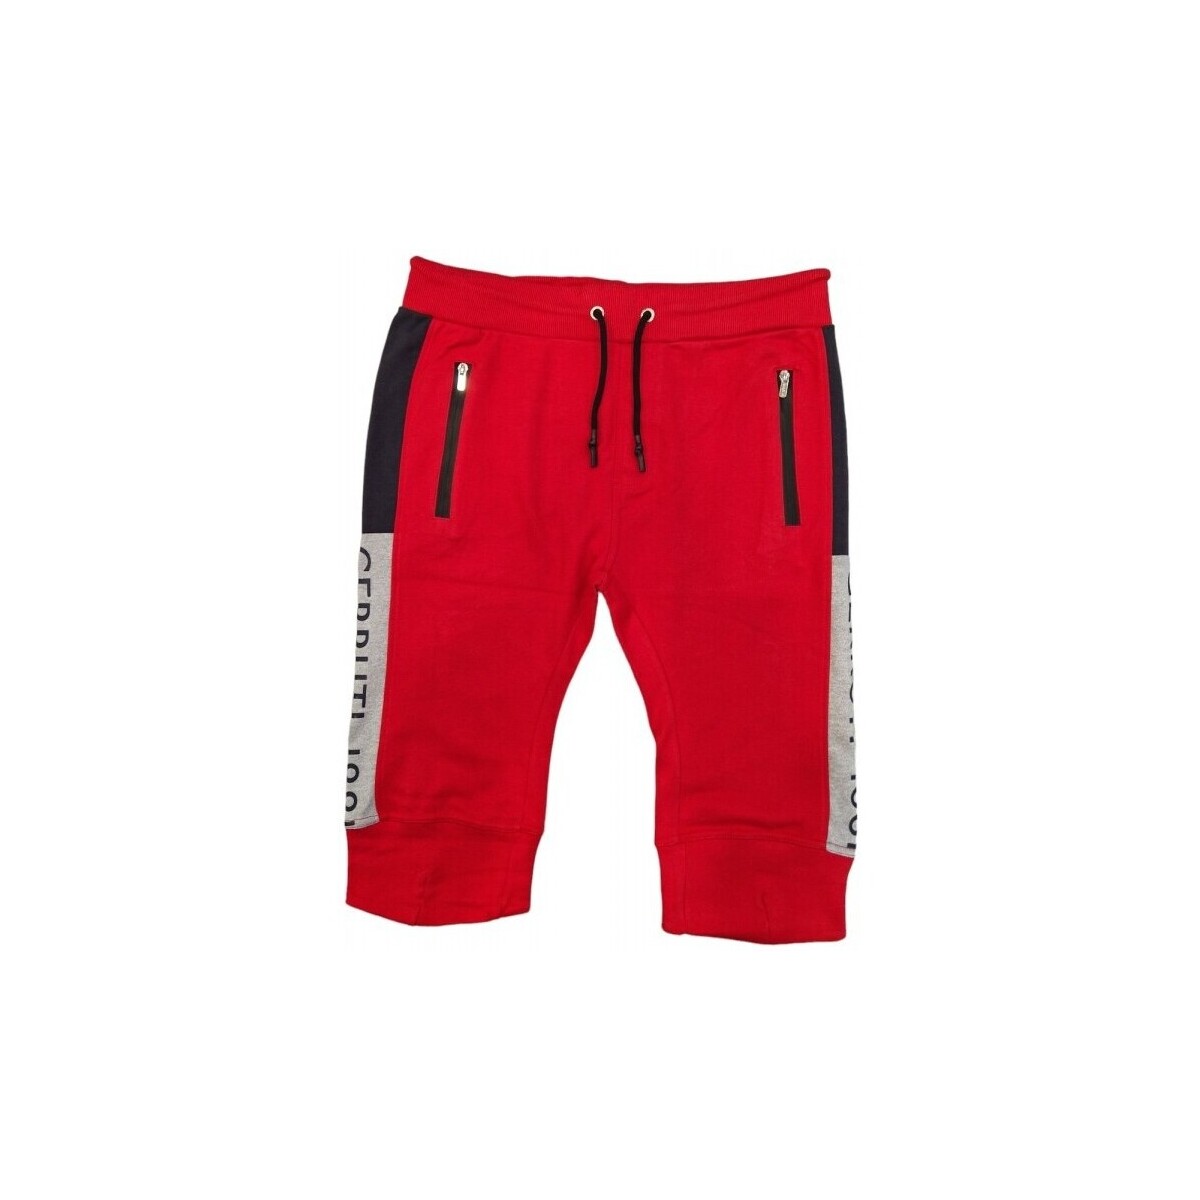 Vêtements Homme Shorts / Bermudas Cerruti 1881 Bayeux Rouge